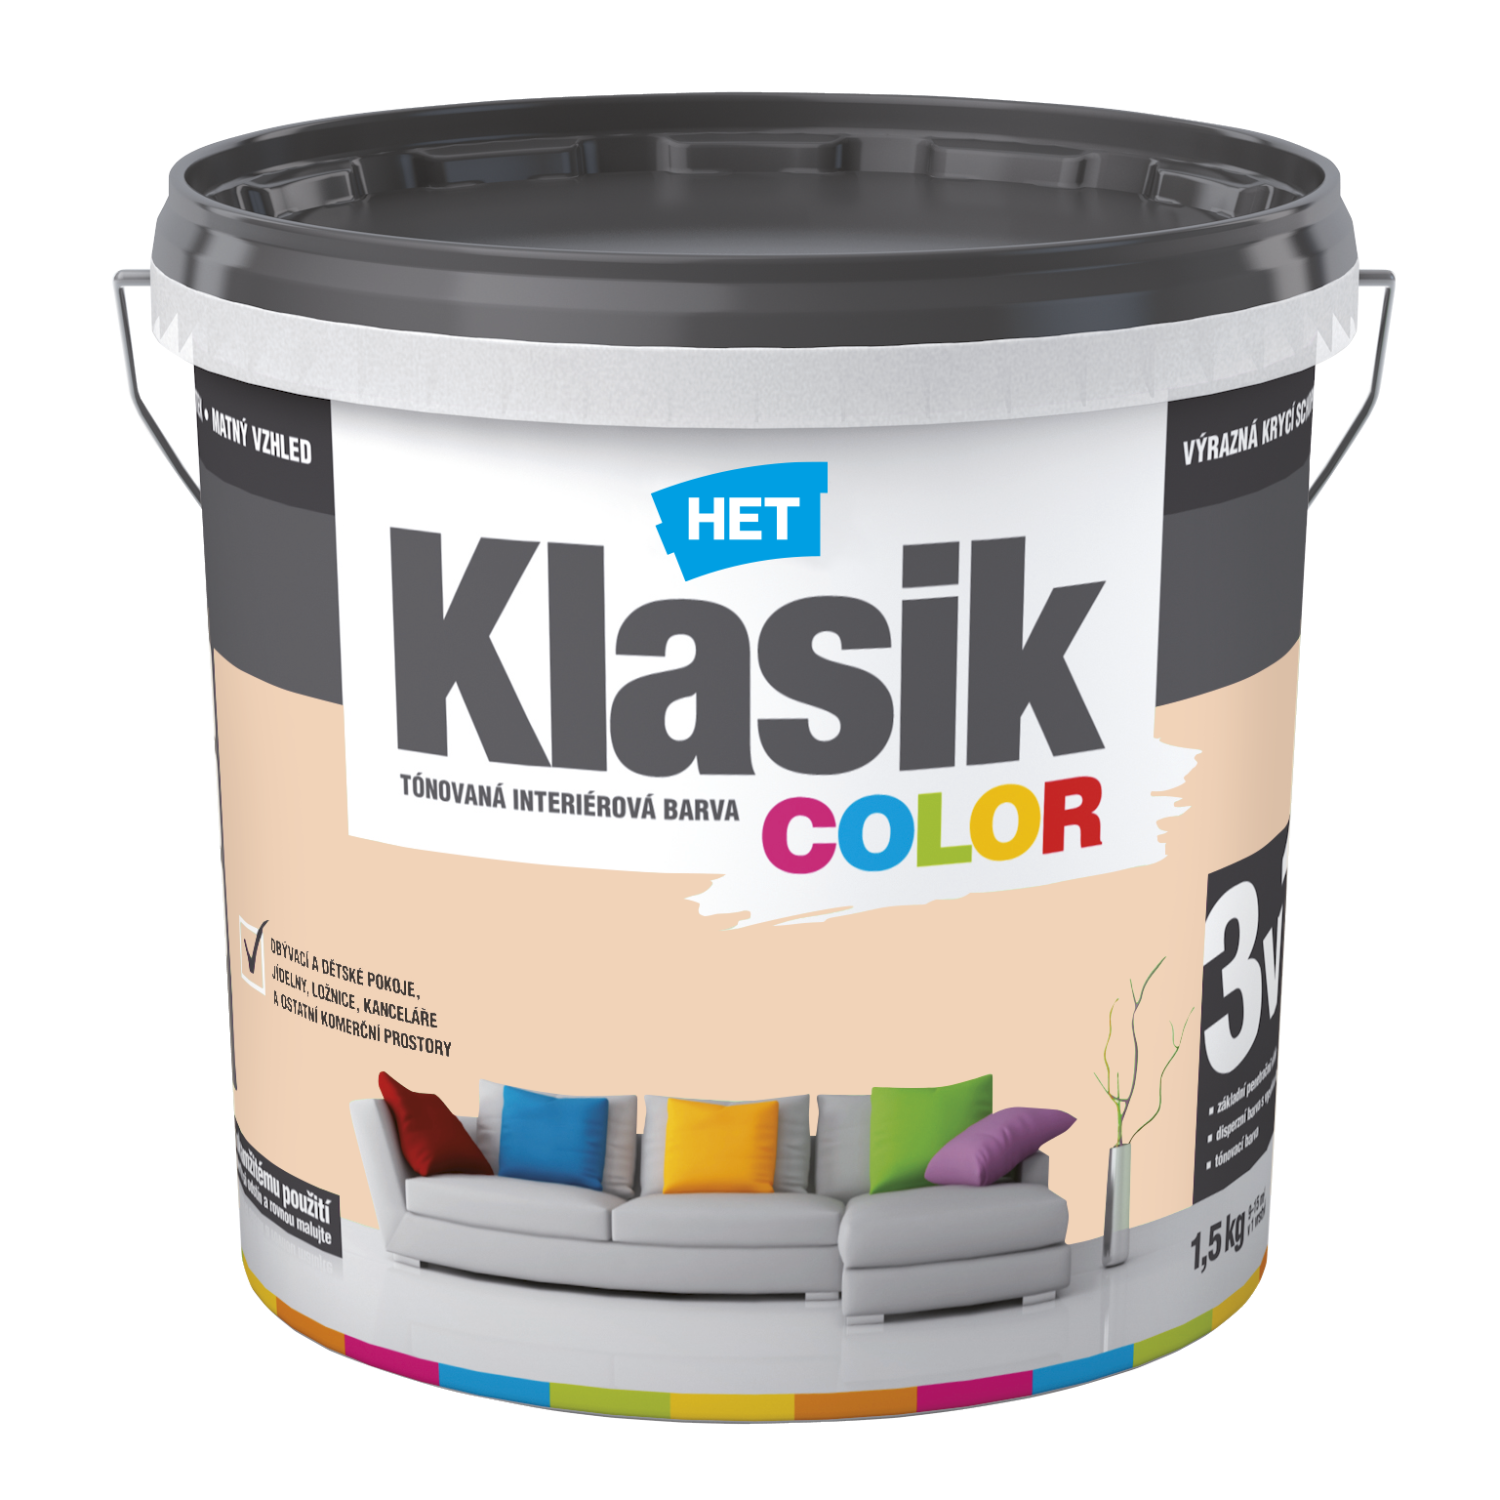 HET Klasik COLOR tónovaná interiérová akrylátová disperzná oteruvzdorná farba 1,5 kg, KC0667 - žltý vanilkový